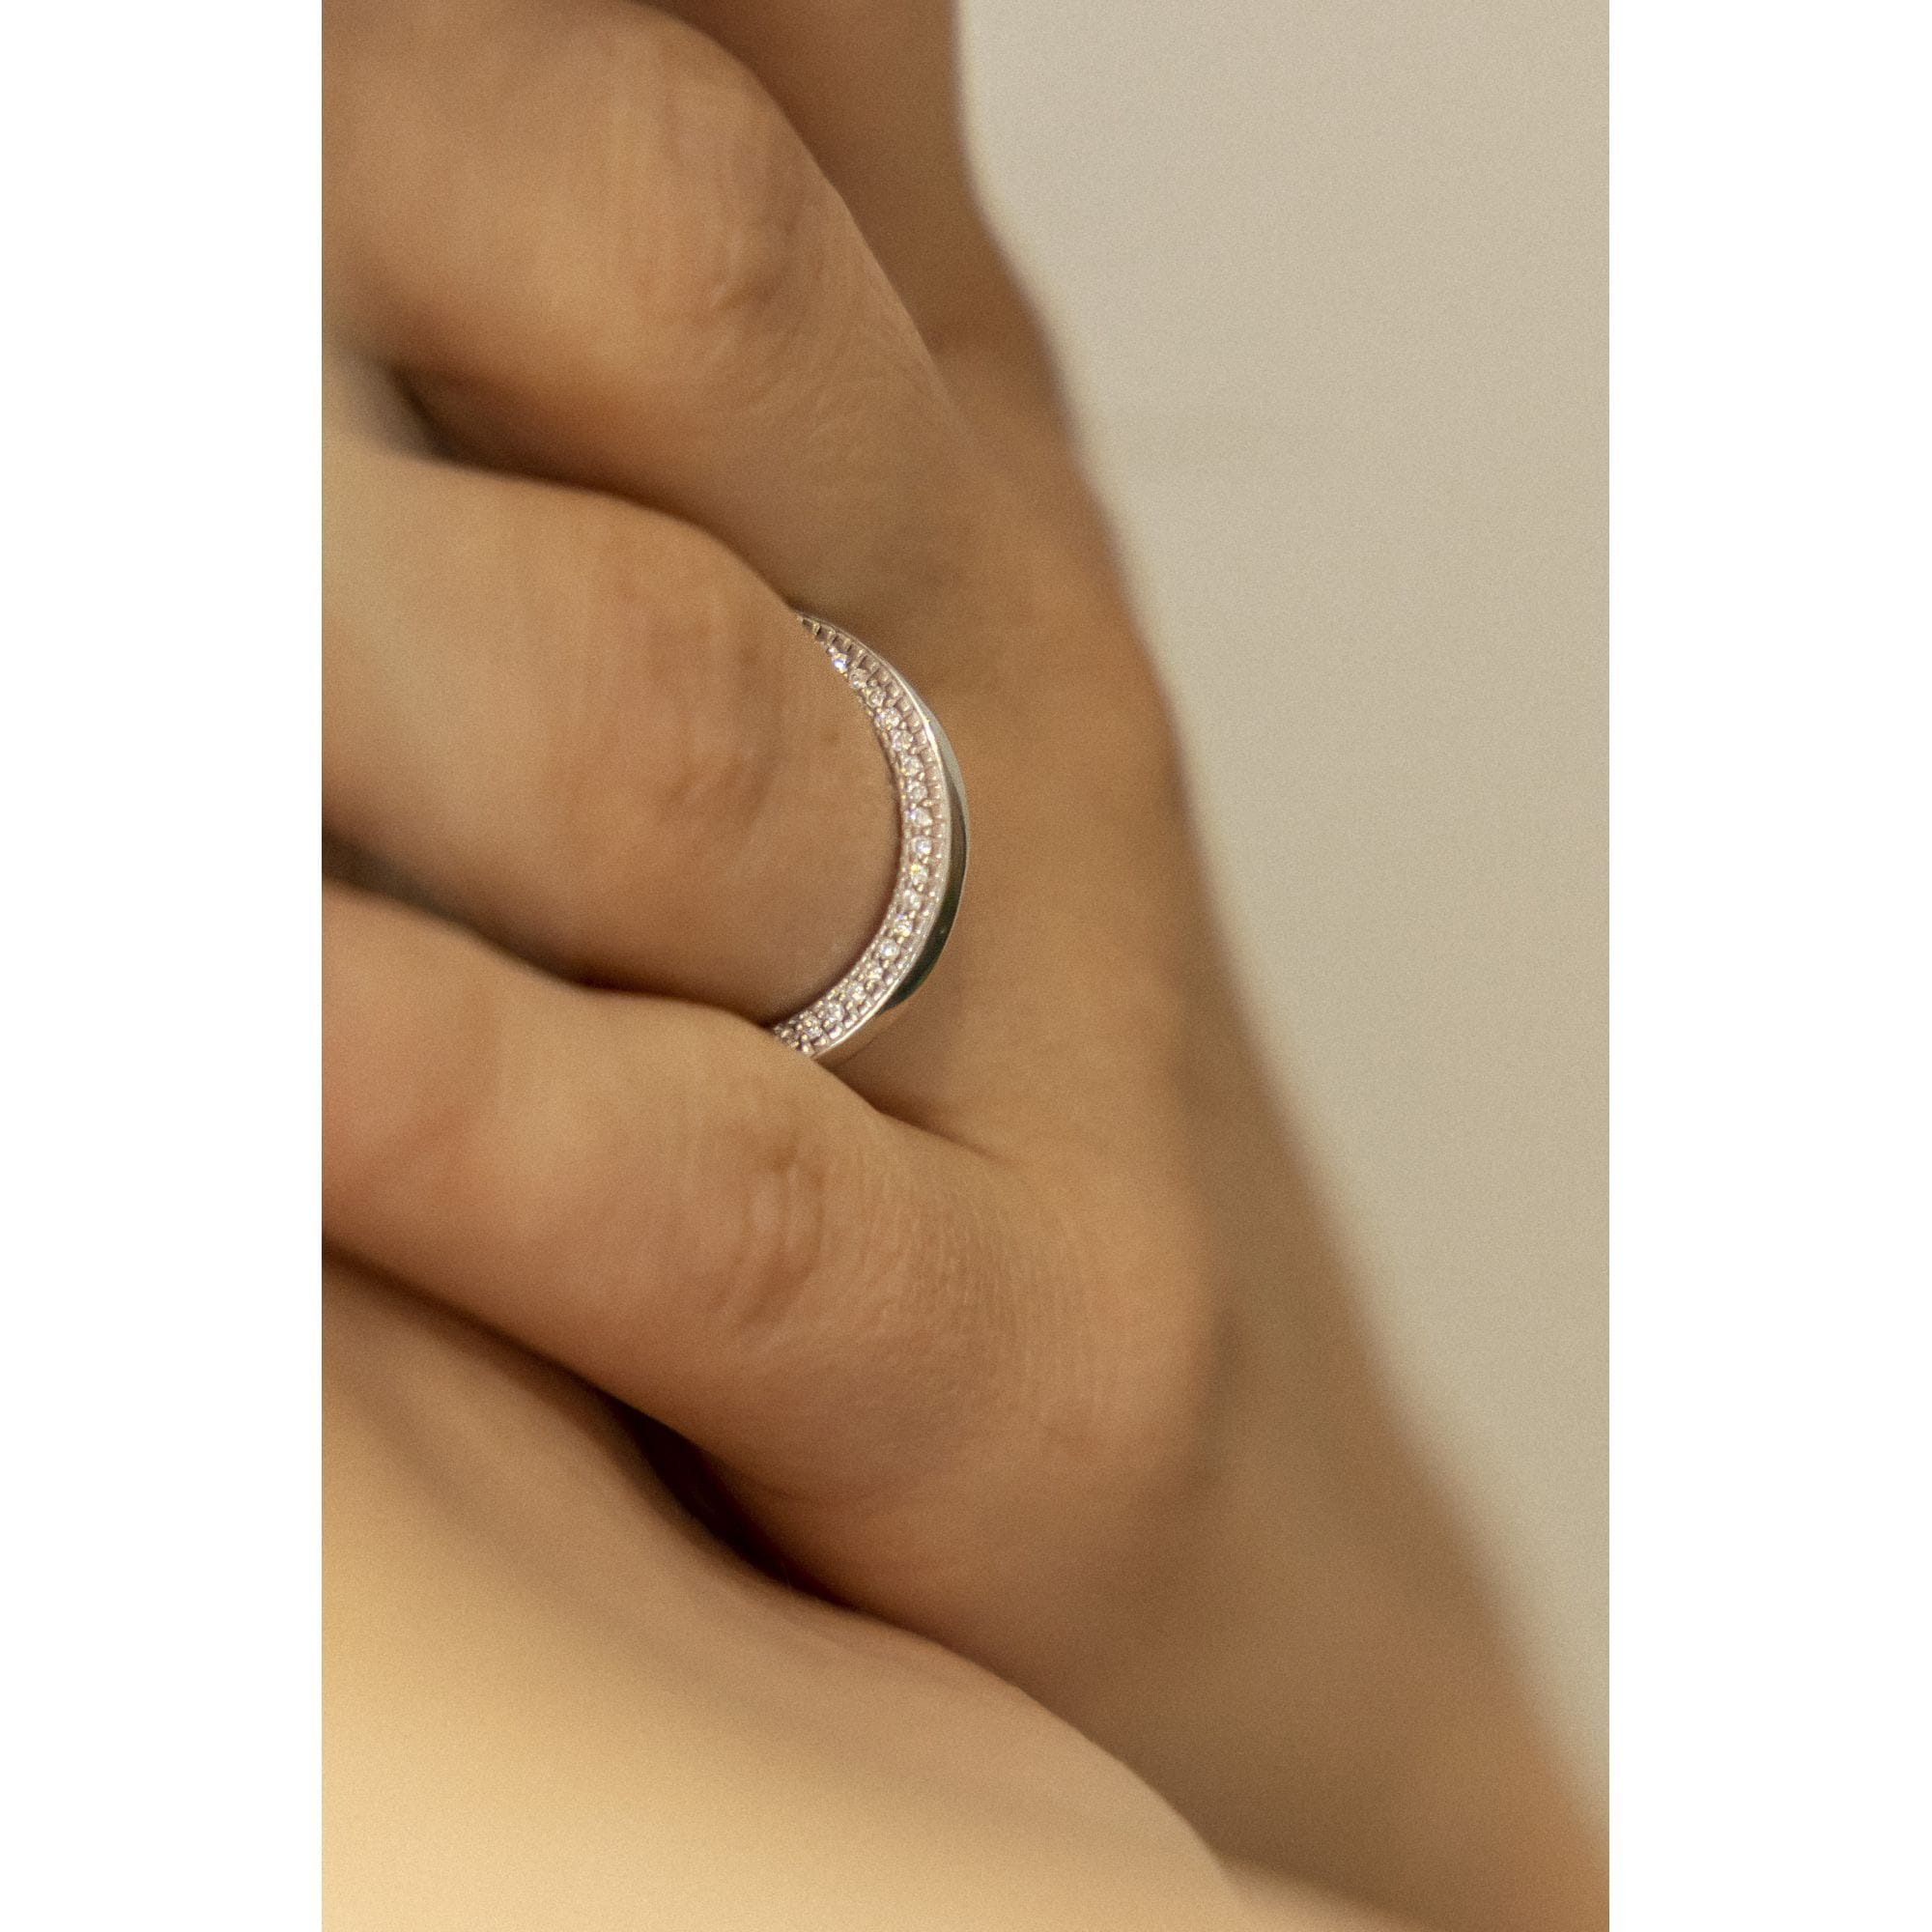 CELESTA Fingerring »925 Silber mit weißen Zirkoniasteinen« online bestellen